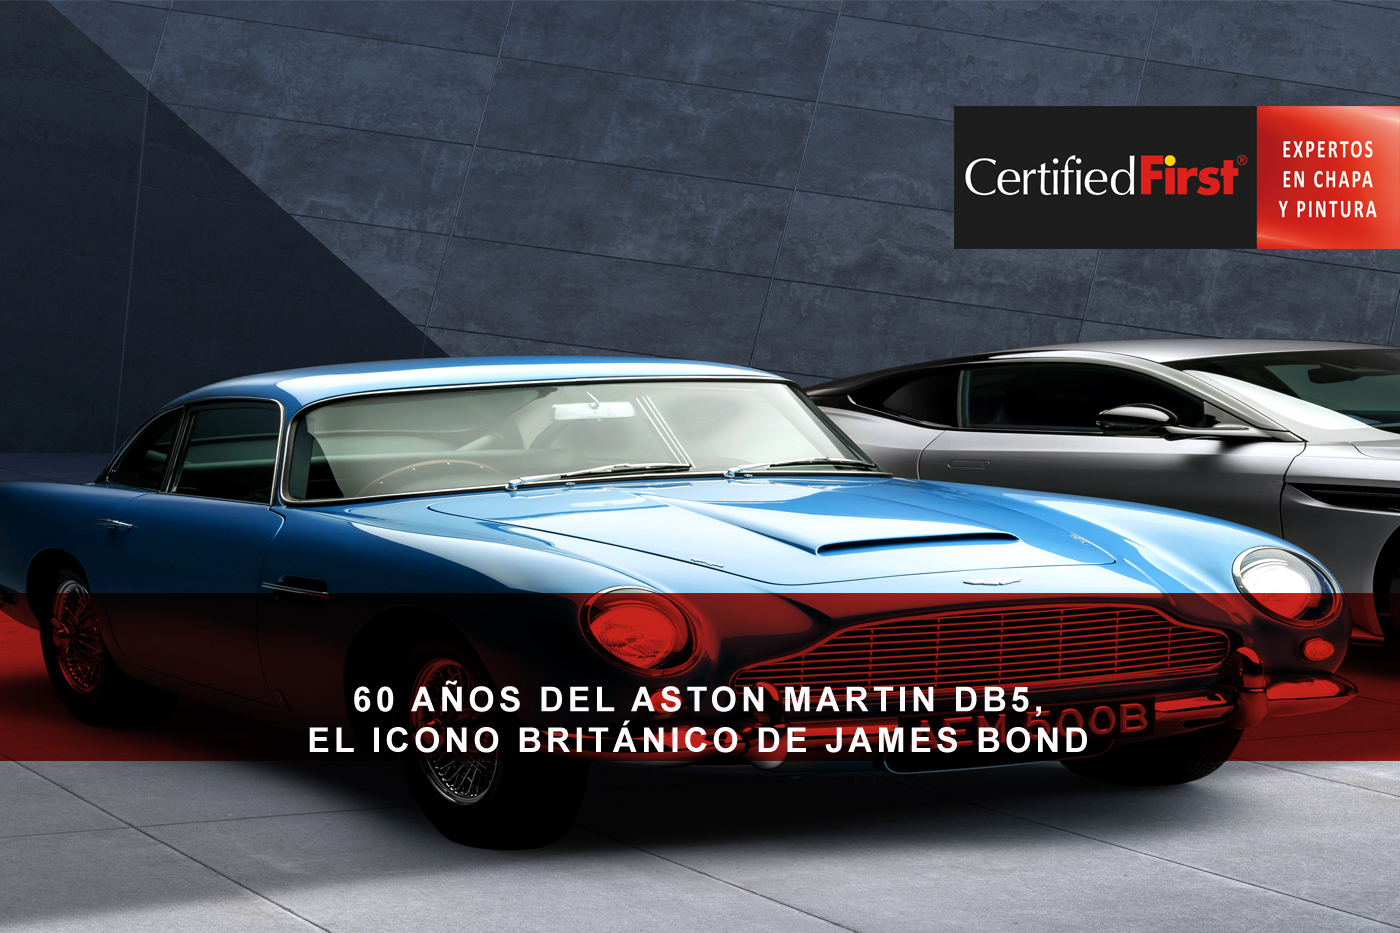 60 años del Aston Martin DB5, el icono británico de James Bond